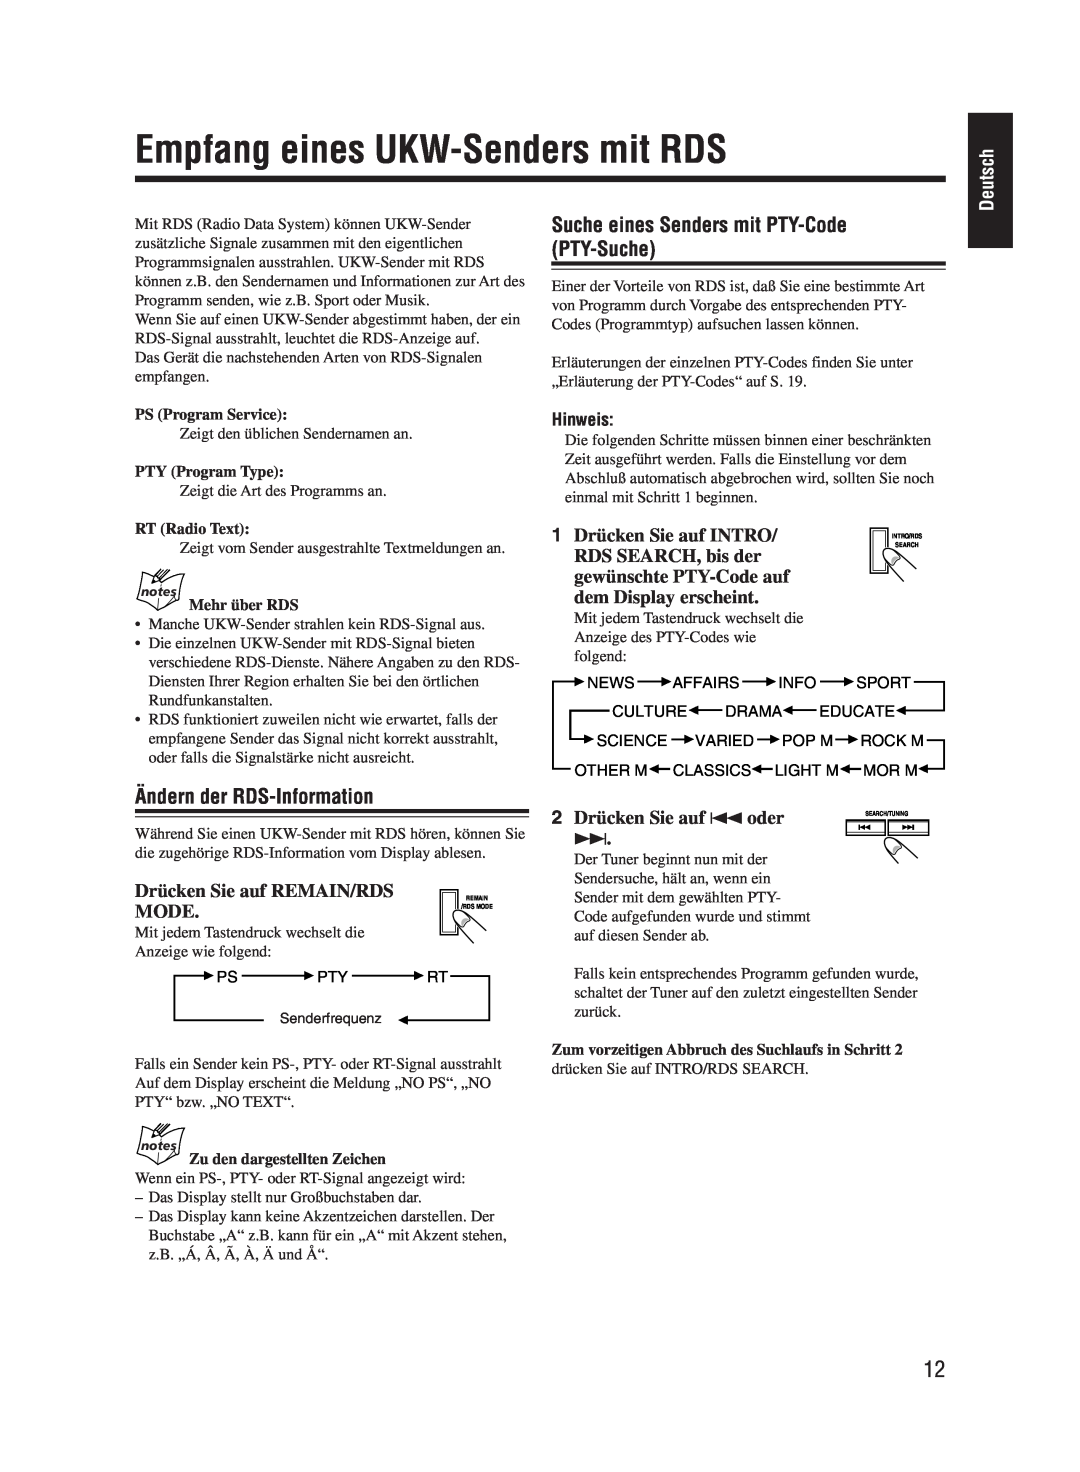 JVC UX-M55 manual Empfang eines UKW-Sendersmit RDS, Suche eines Senders mit PTY-Code PTY-Suche, Ändern der RDS-Information 